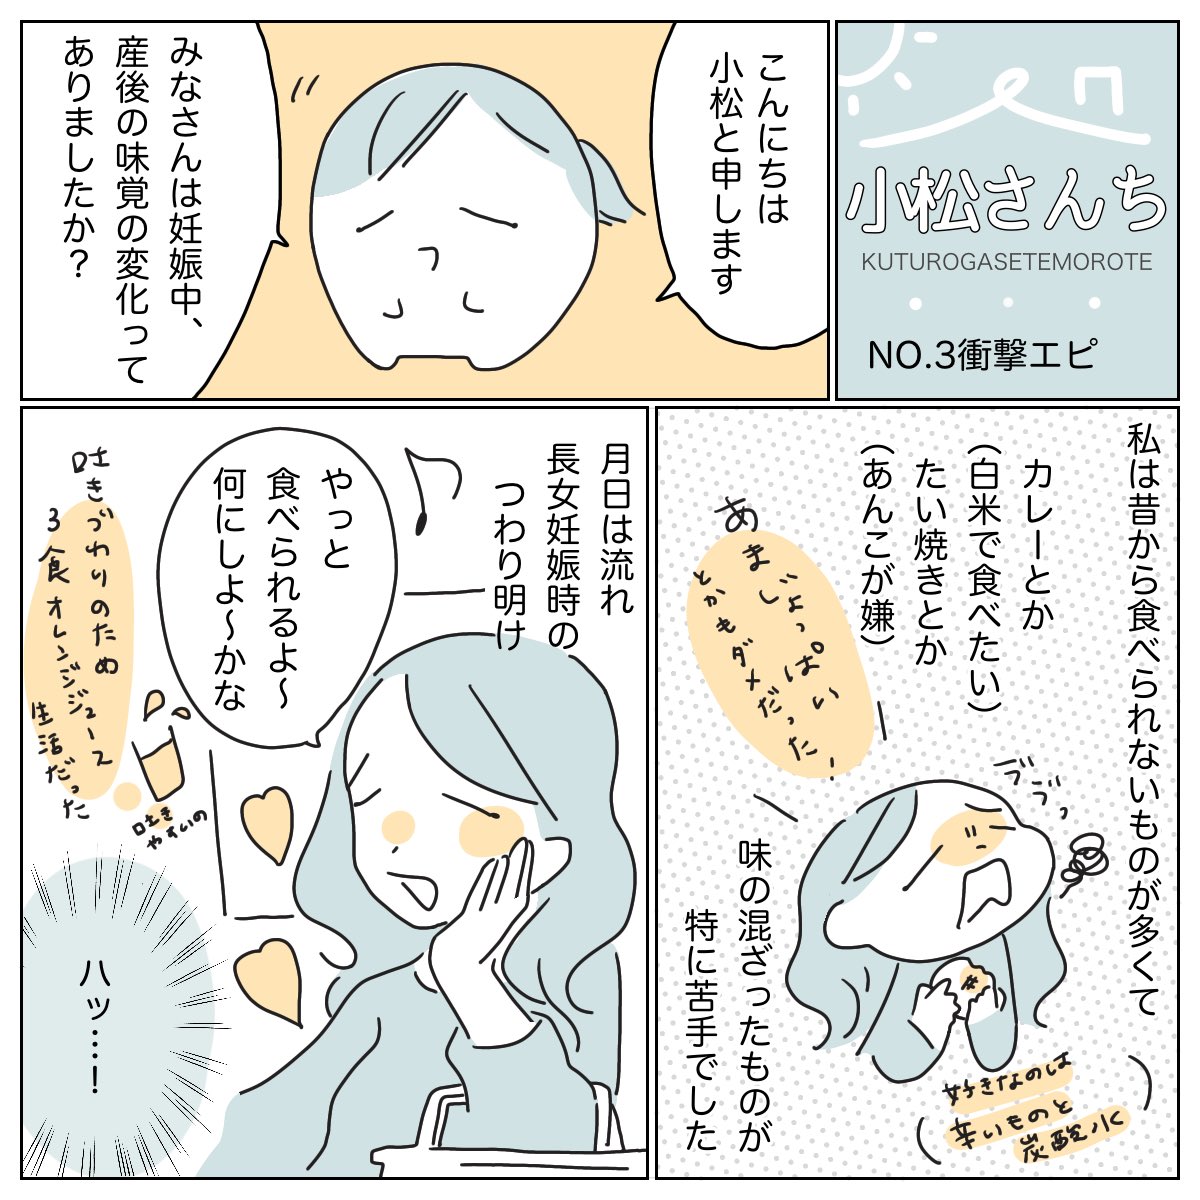 #育児漫画
#小松さんち
ベビーカレンダー様のコンテスト用に描いてたやつ(もう6月…)
こんな経験あります??? 